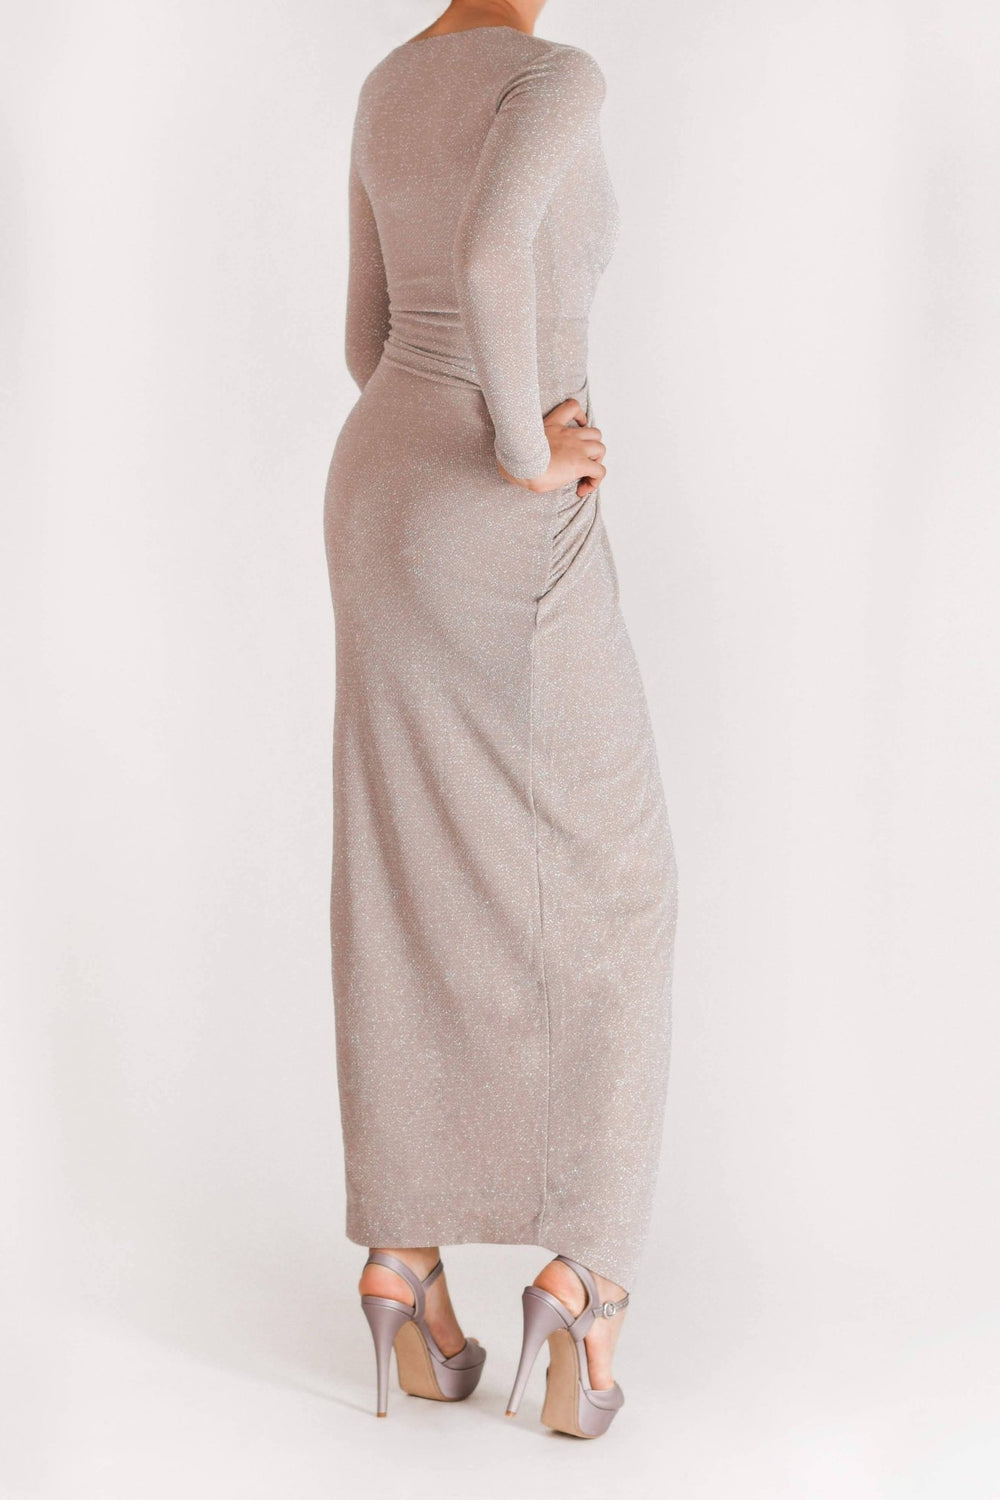 Alyssa - vestido con mangas largas - Lend the Trend renta de vestidos mexico